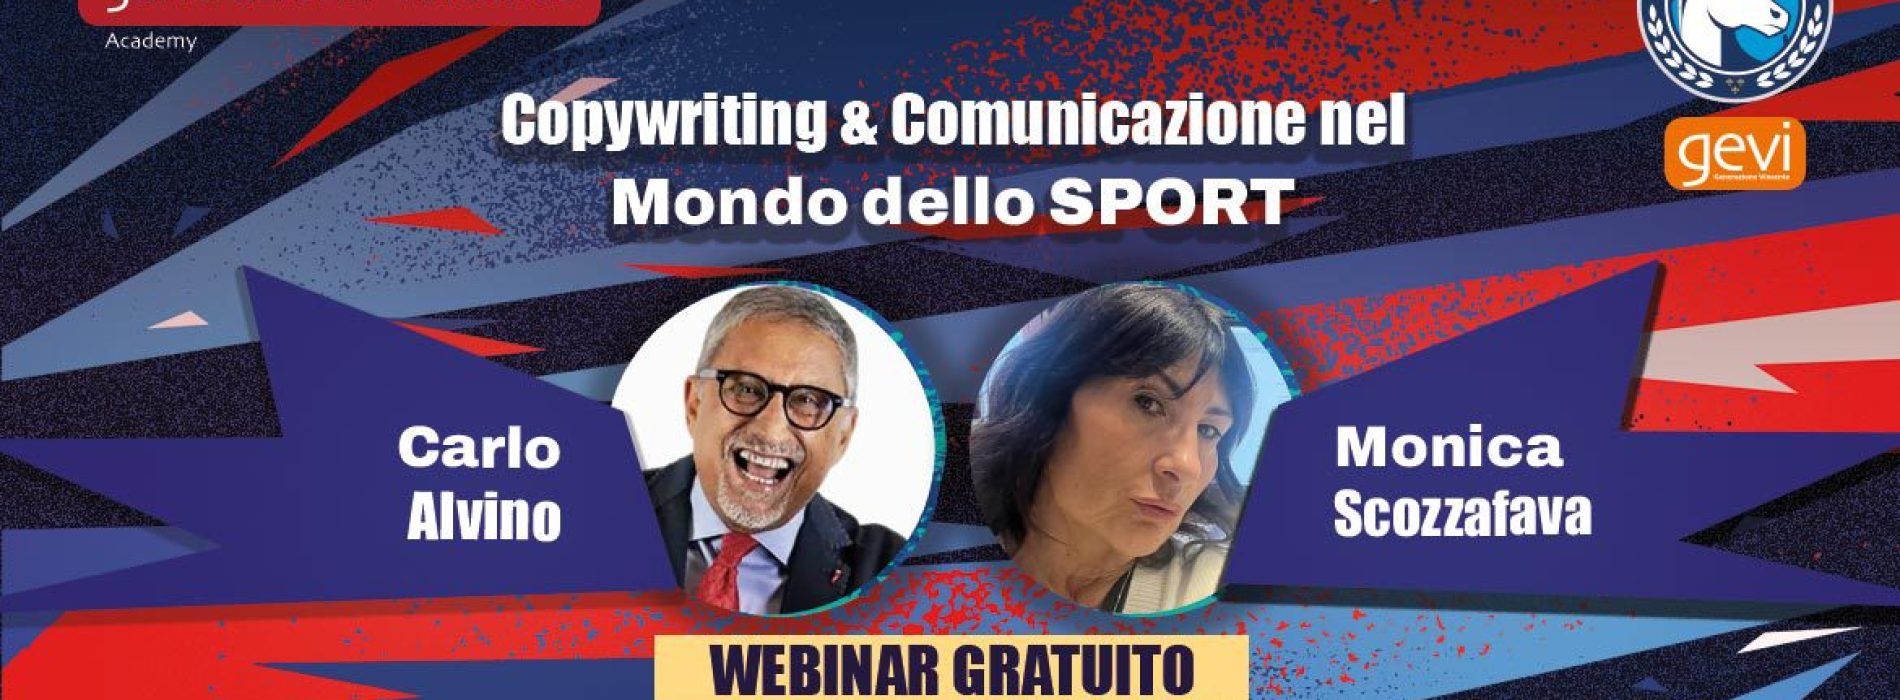 Webinar Gratuito: Copywriting e Comunicazione nel Mondo dello Sport